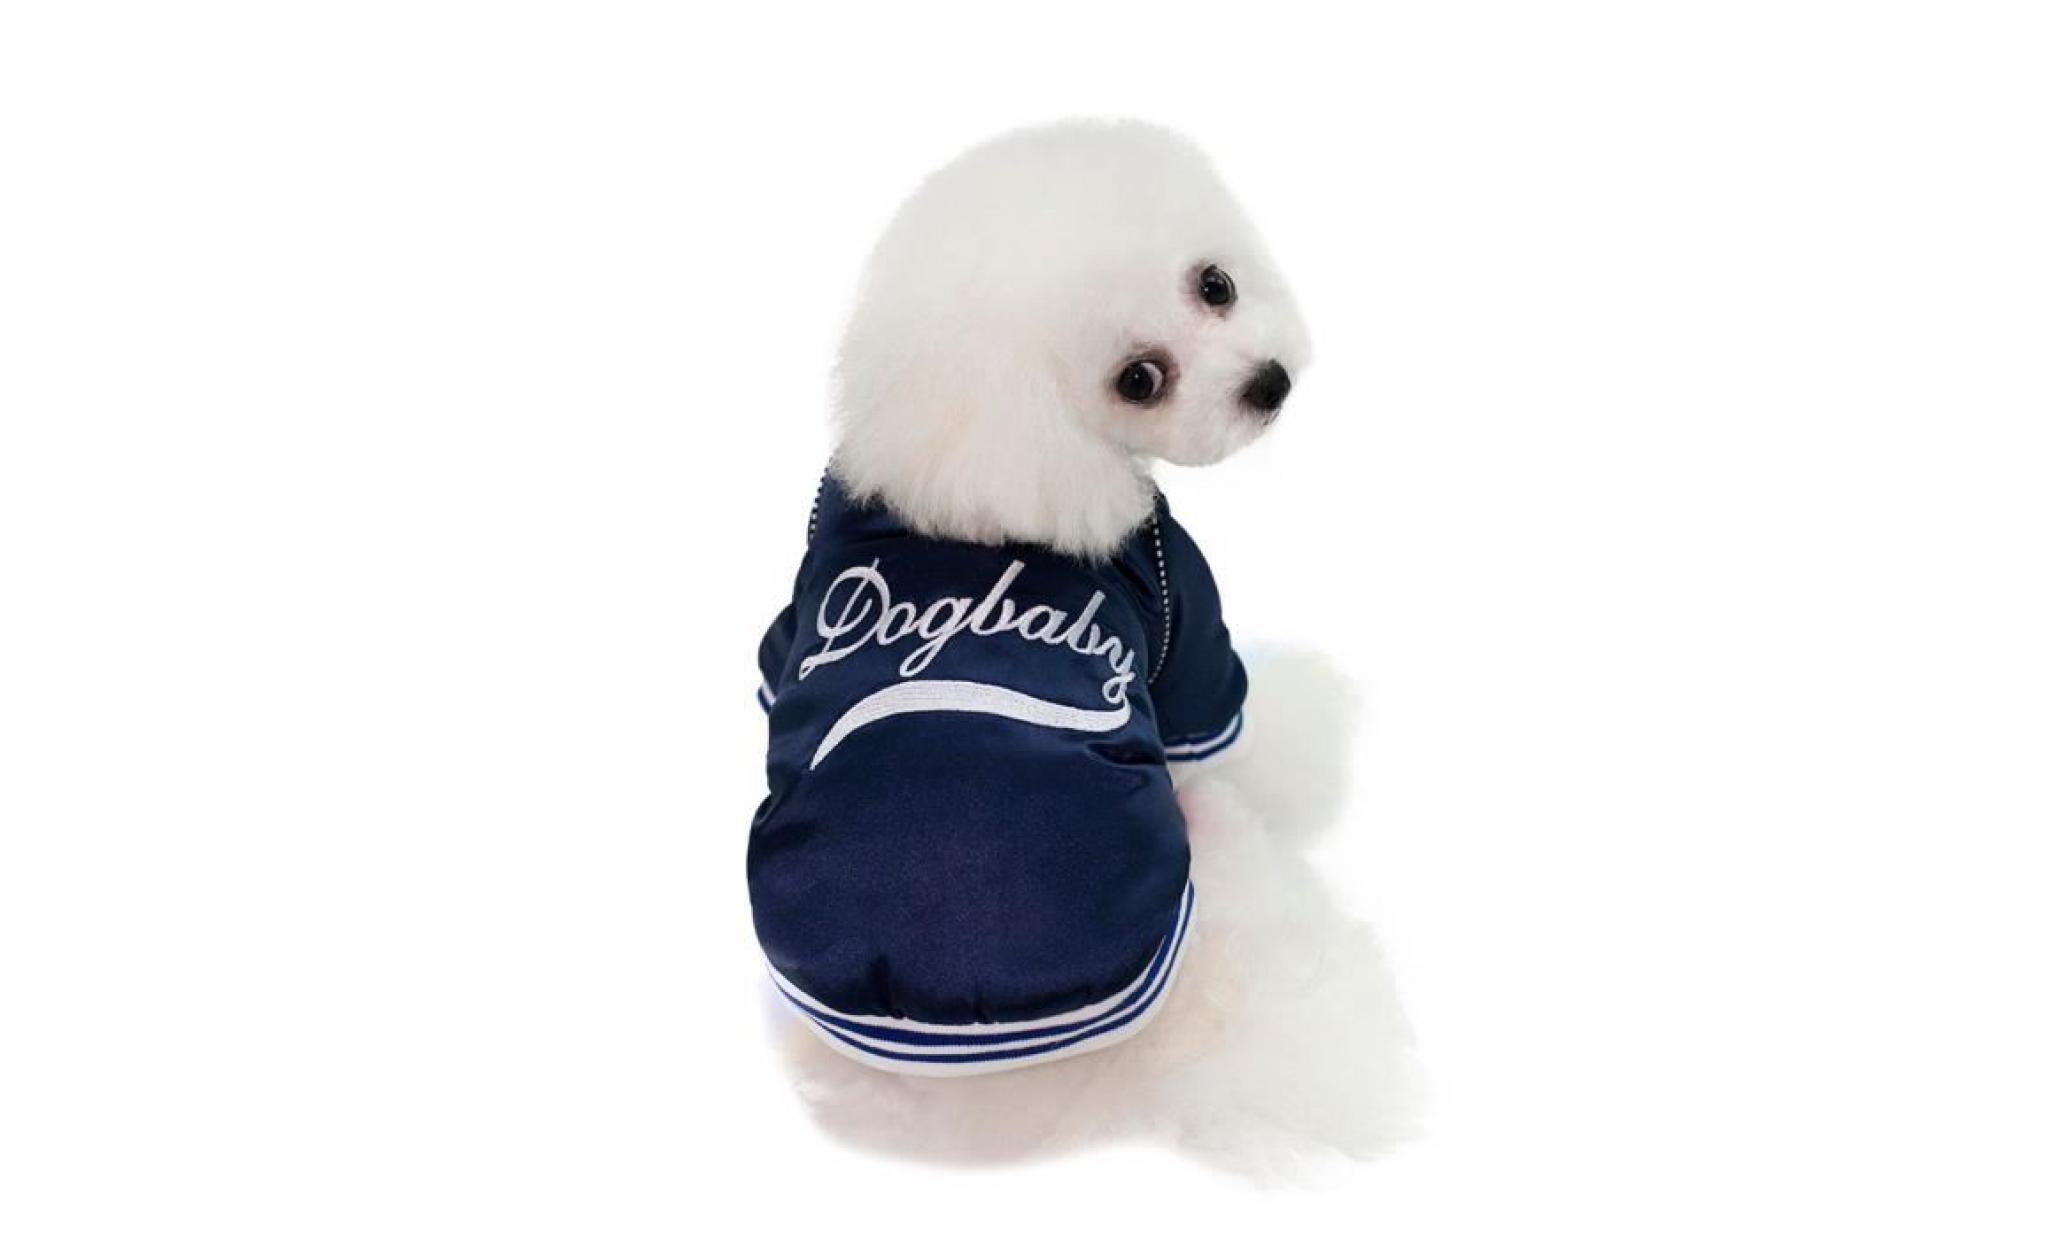 code bleu foncé xl dogbaby chien nouvelle usine spot vêtements d'hiver directe commerce extérieur modèles d'explosion taobao coton